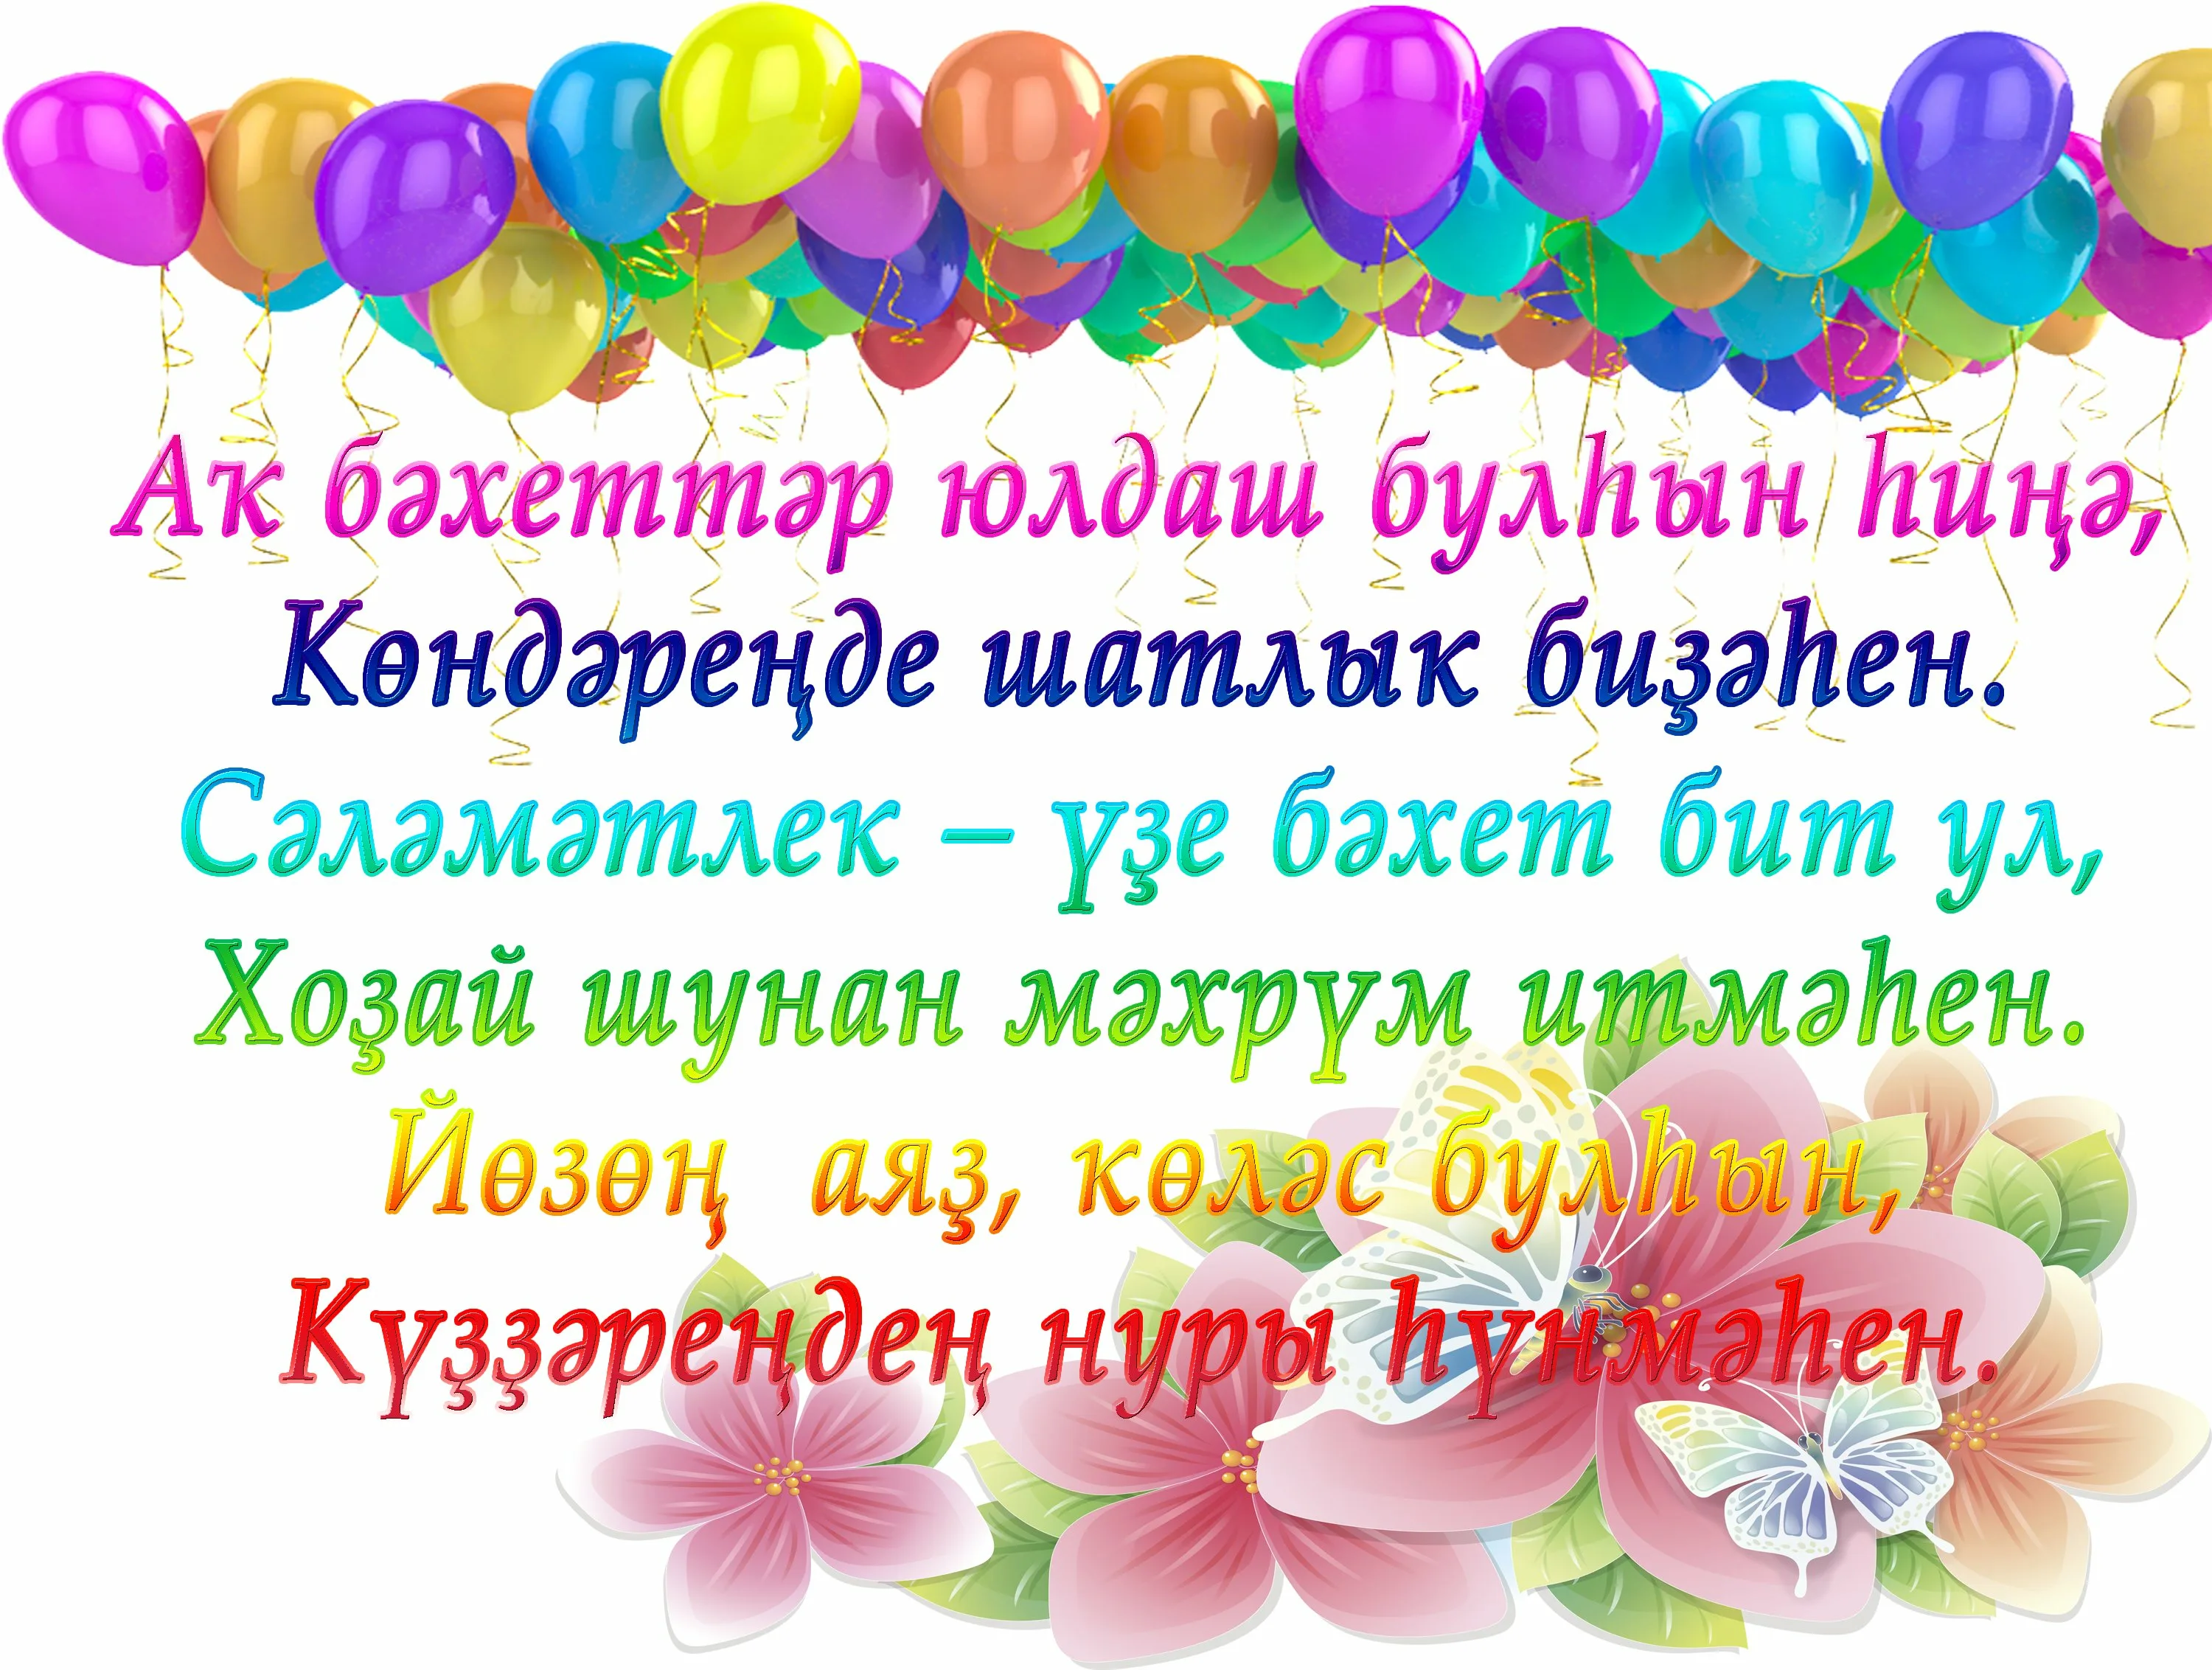 Поздравление на узбекском языке с днем рождения. Поздравления с днём рождения на башкирском. Поздравления с днём рождения на башкирском языке. Поздравления с днём на башкирском языке. Поздравление с юбилеем на башкирском языке.